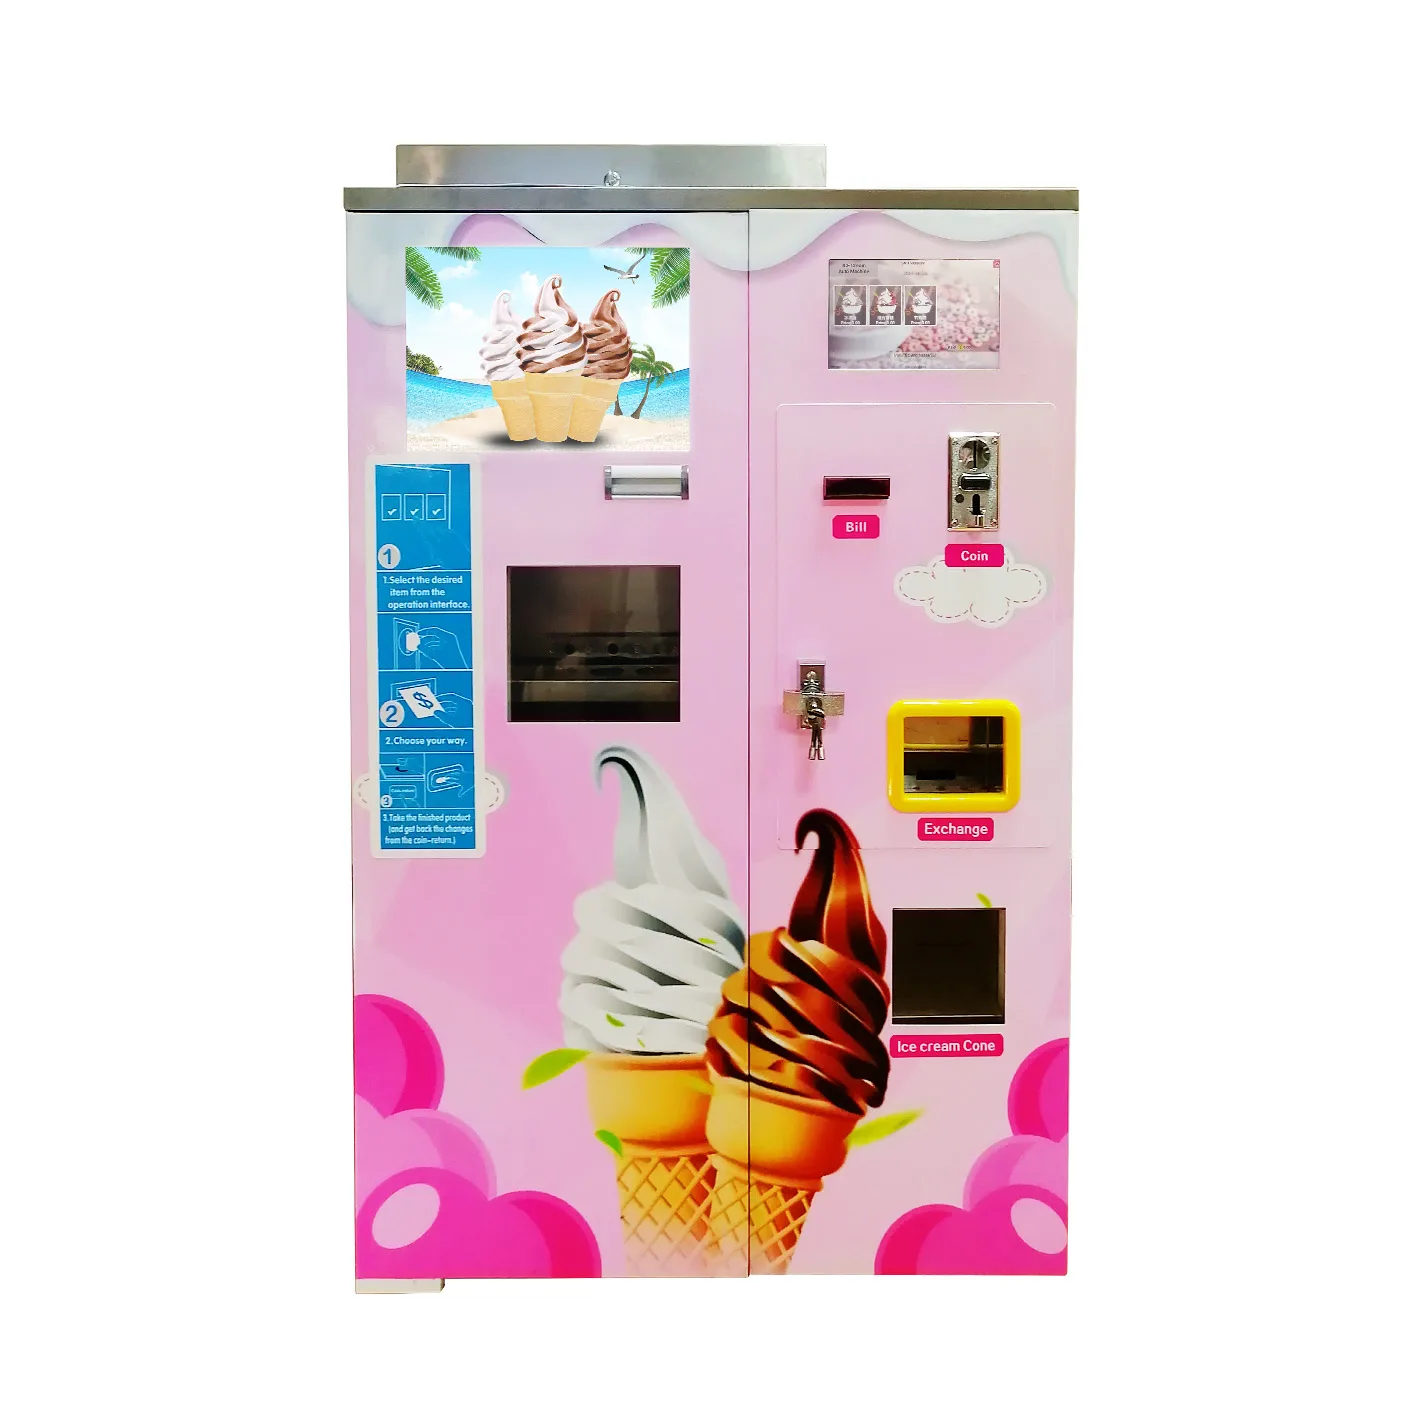 アイスクリームジェラートメーカー製造機中国工場供給自動販売機 Buy 自動販売をアイスクリームメーカー 自動販売アイスクリームマシン アイスクリーム 自動販売製造機 Product On Alibaba Com